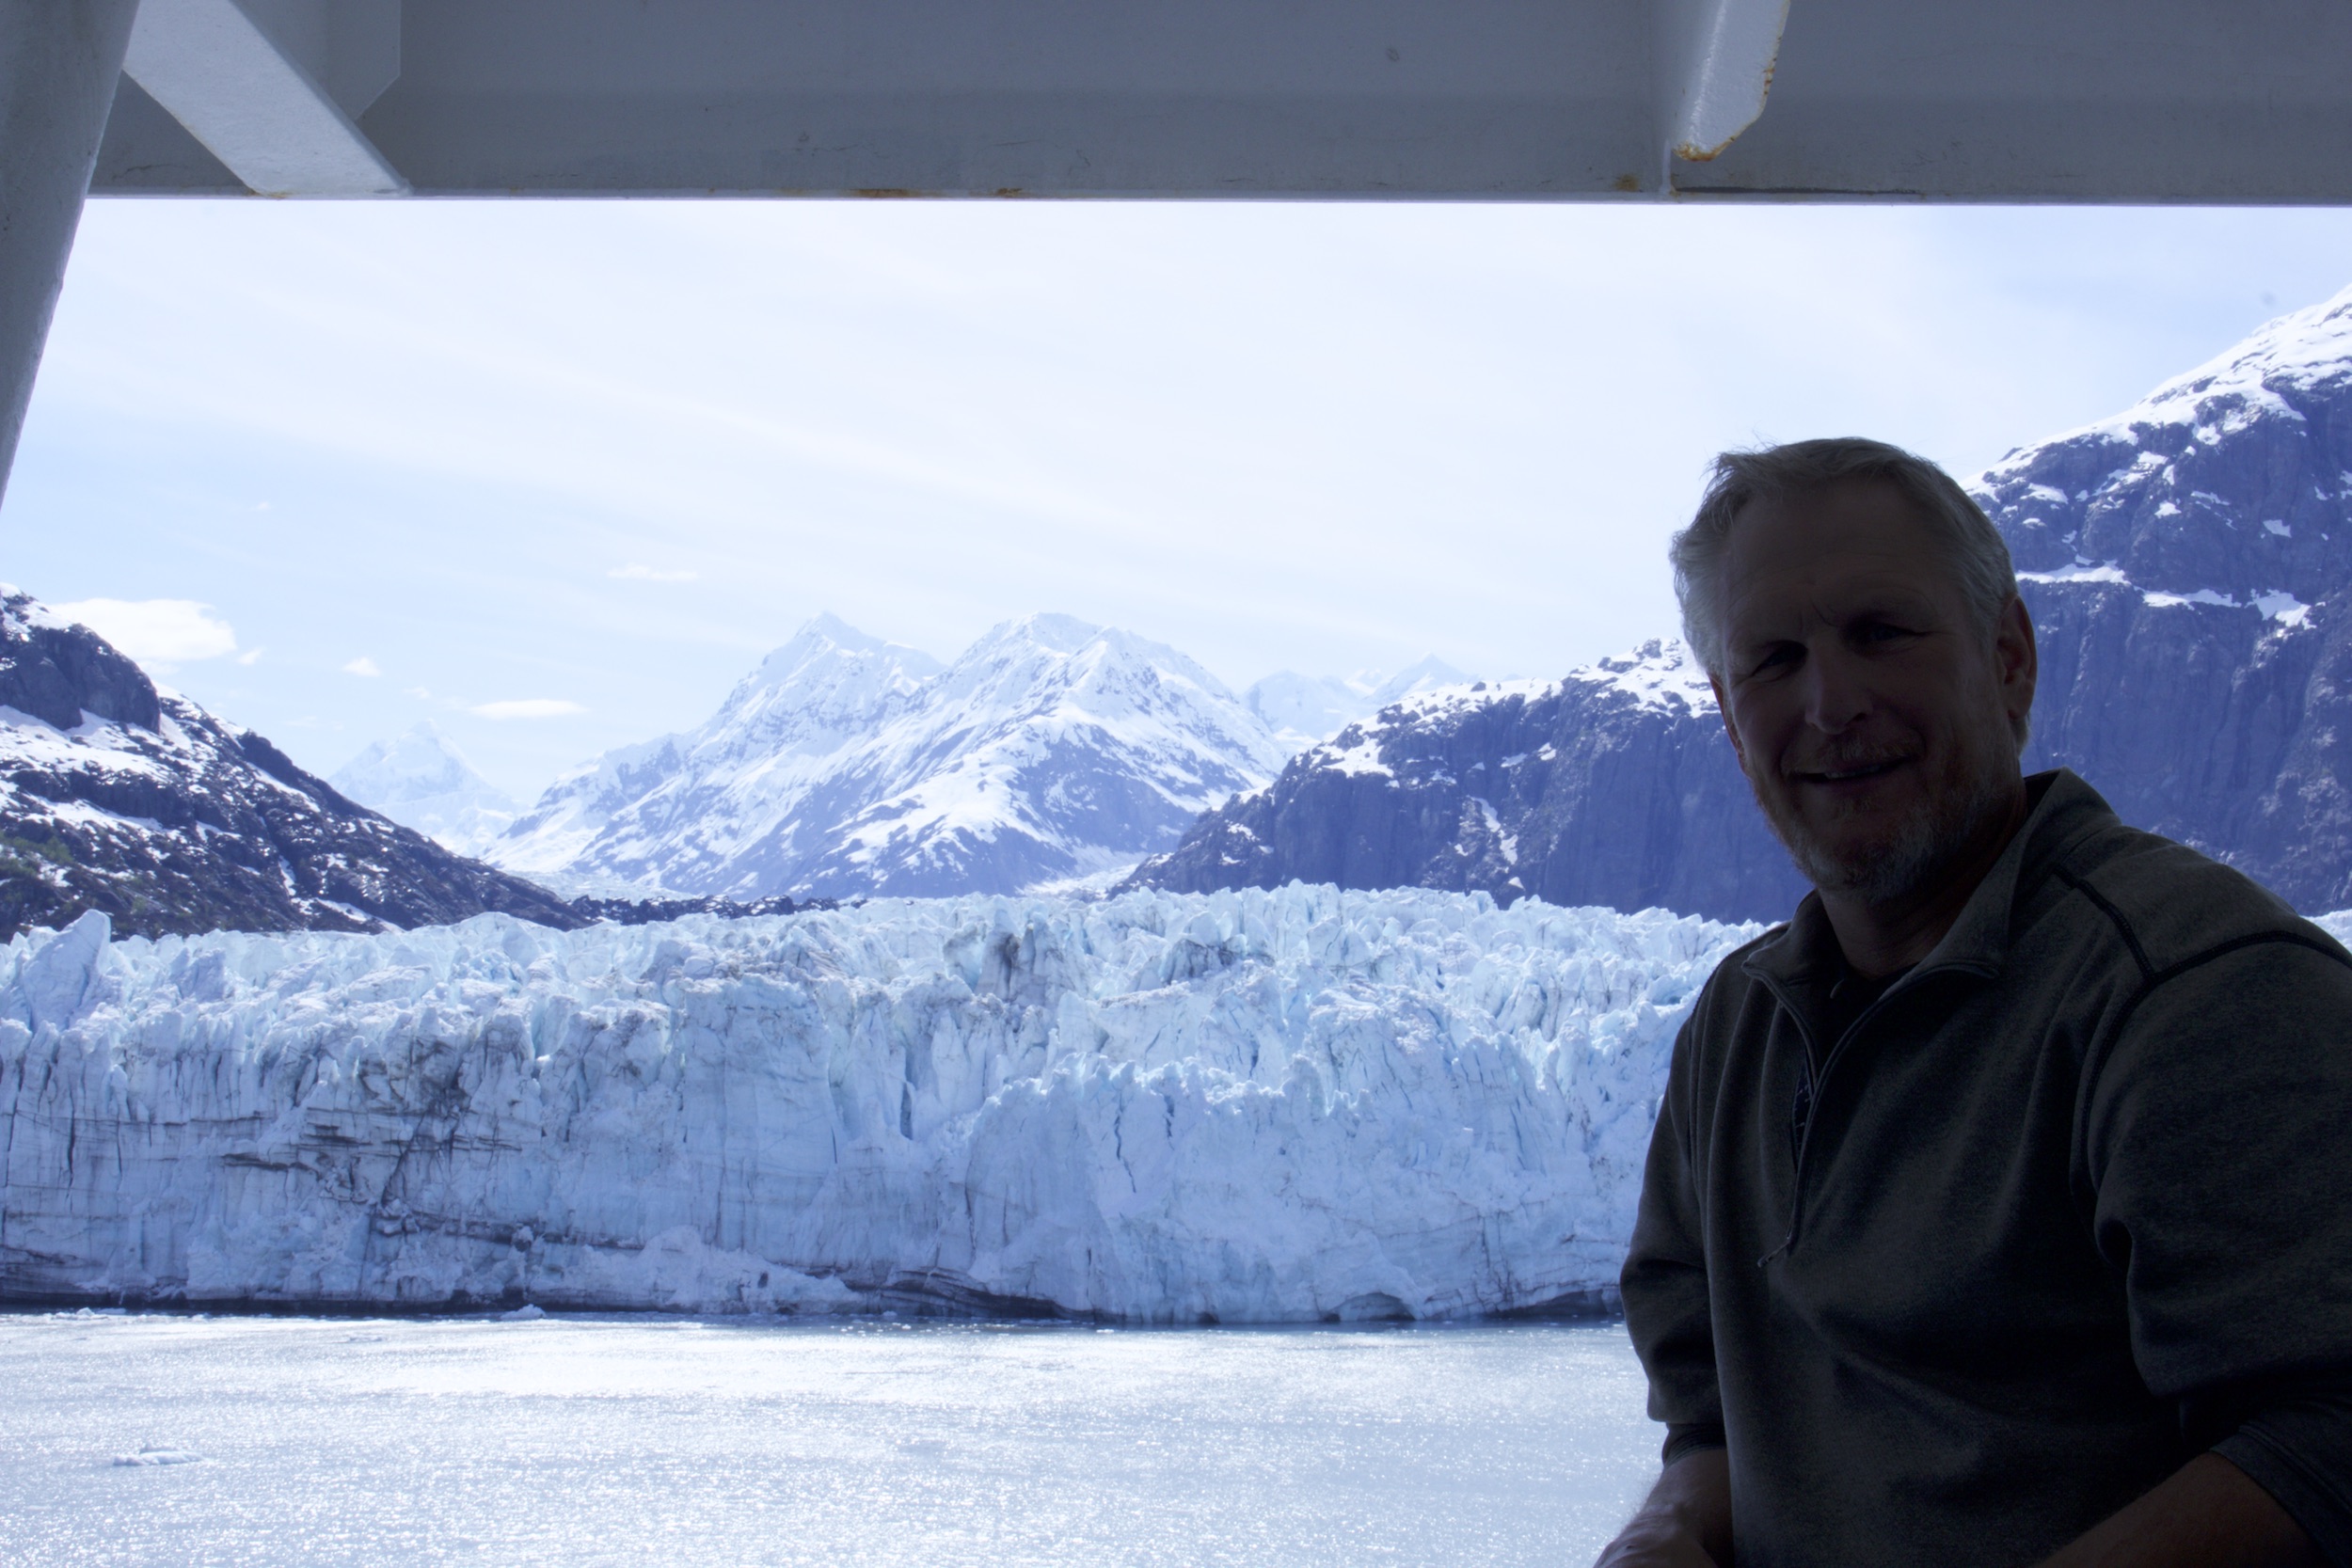 Natan at Glacier Bay, Alaska from the Crown Princess cruise ship